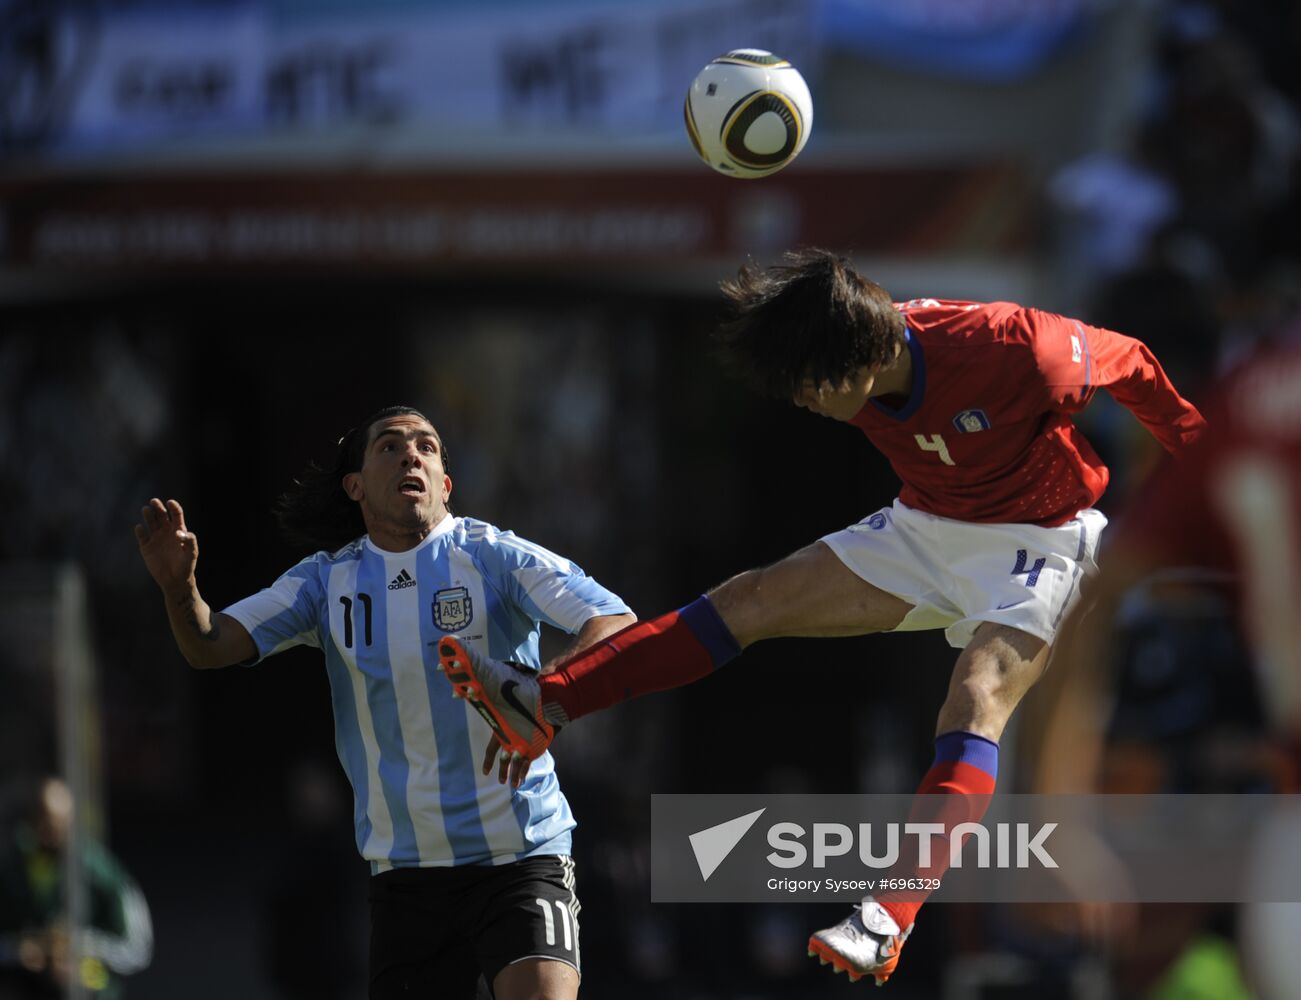 2010 FIFA World Cup. Argentina vs. Korea Republic